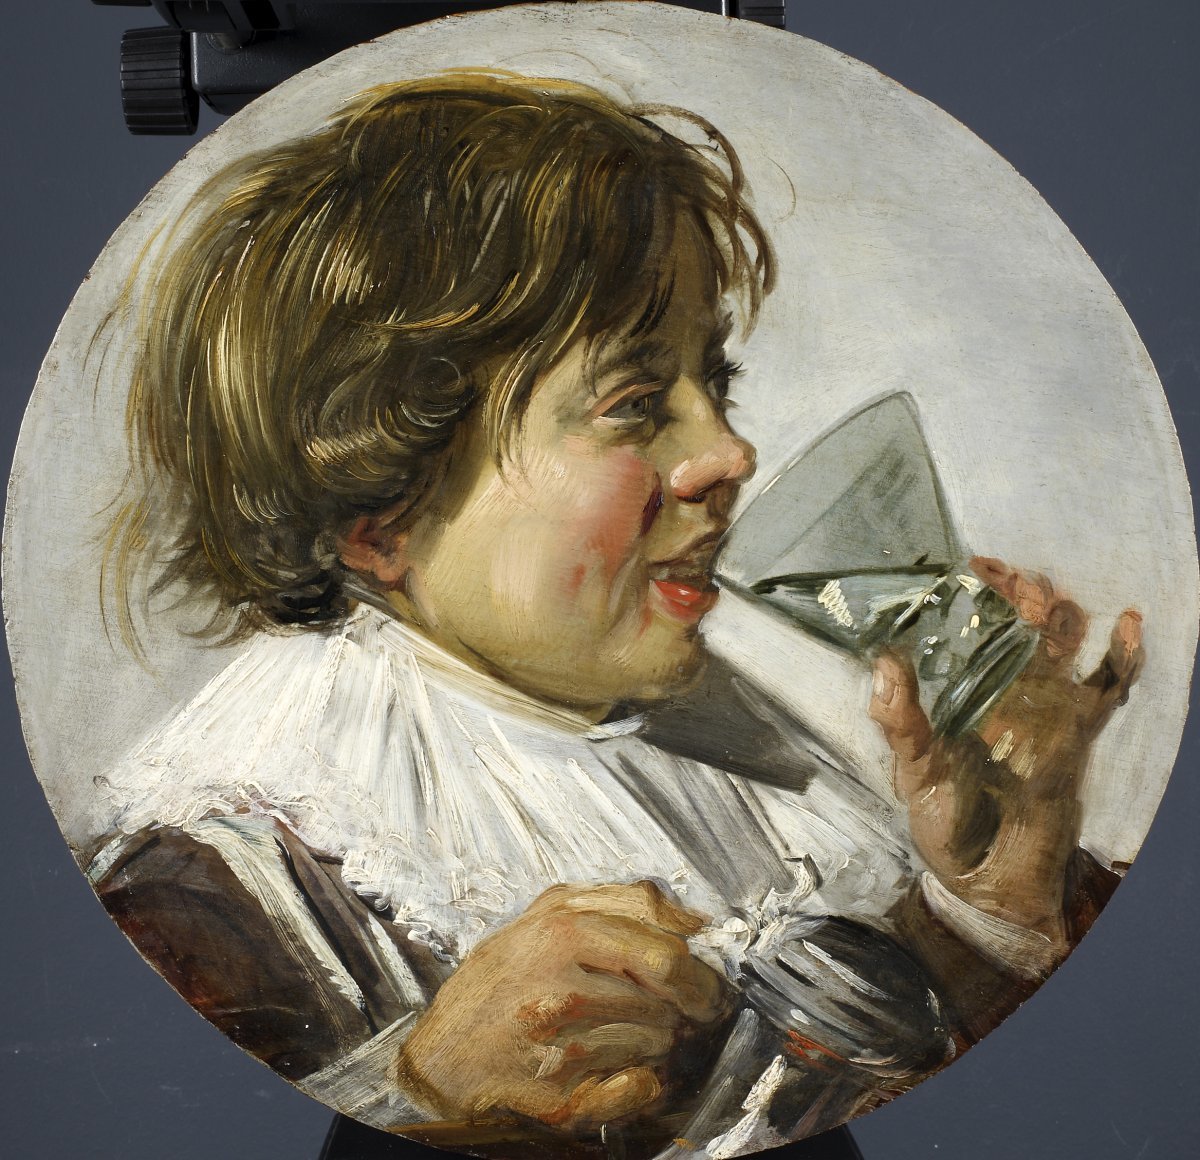 와인잔을 들고 웃는 소년, 1630년 경, 나무에 유채, 38 x 38cm, 독일 슈베린 국립 예술품 컬렉션 소장. 레익스미술관 제공